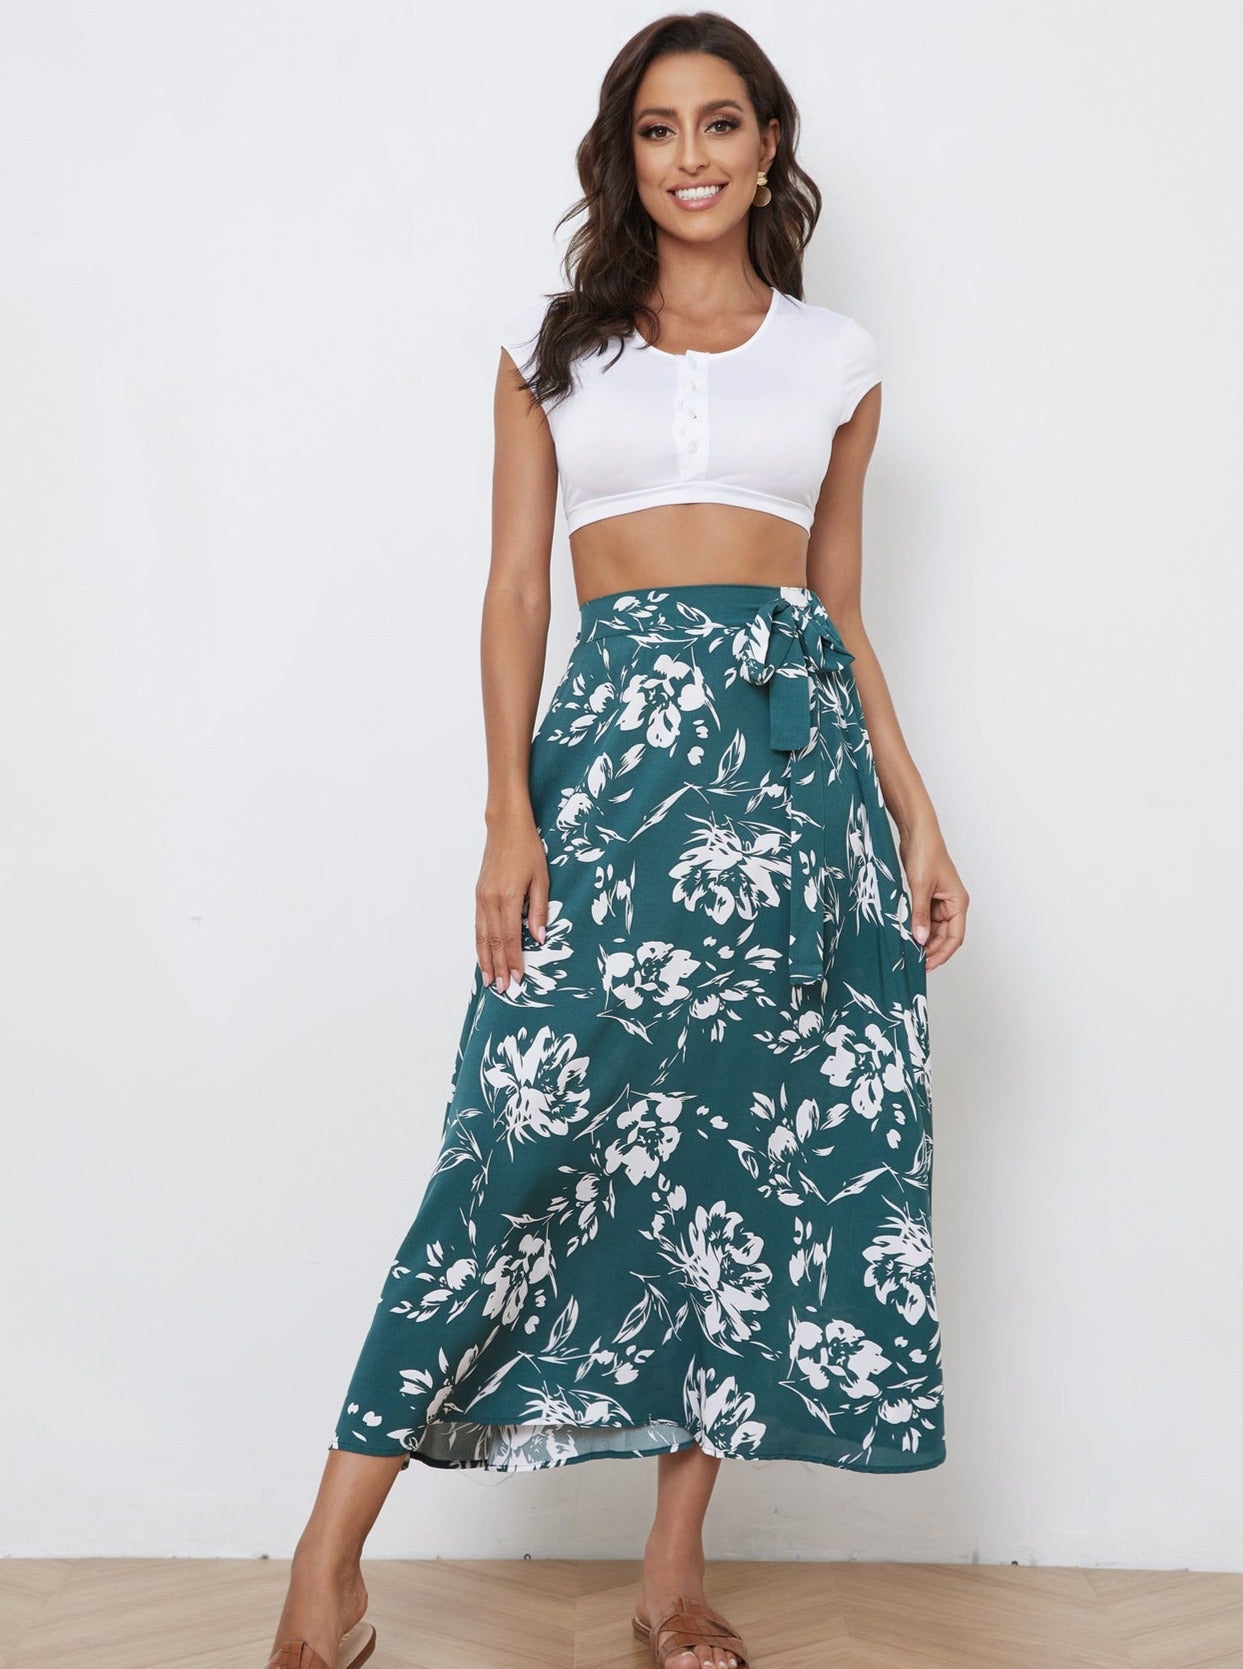 Vintage Floral Print A-Line Summer Skirt